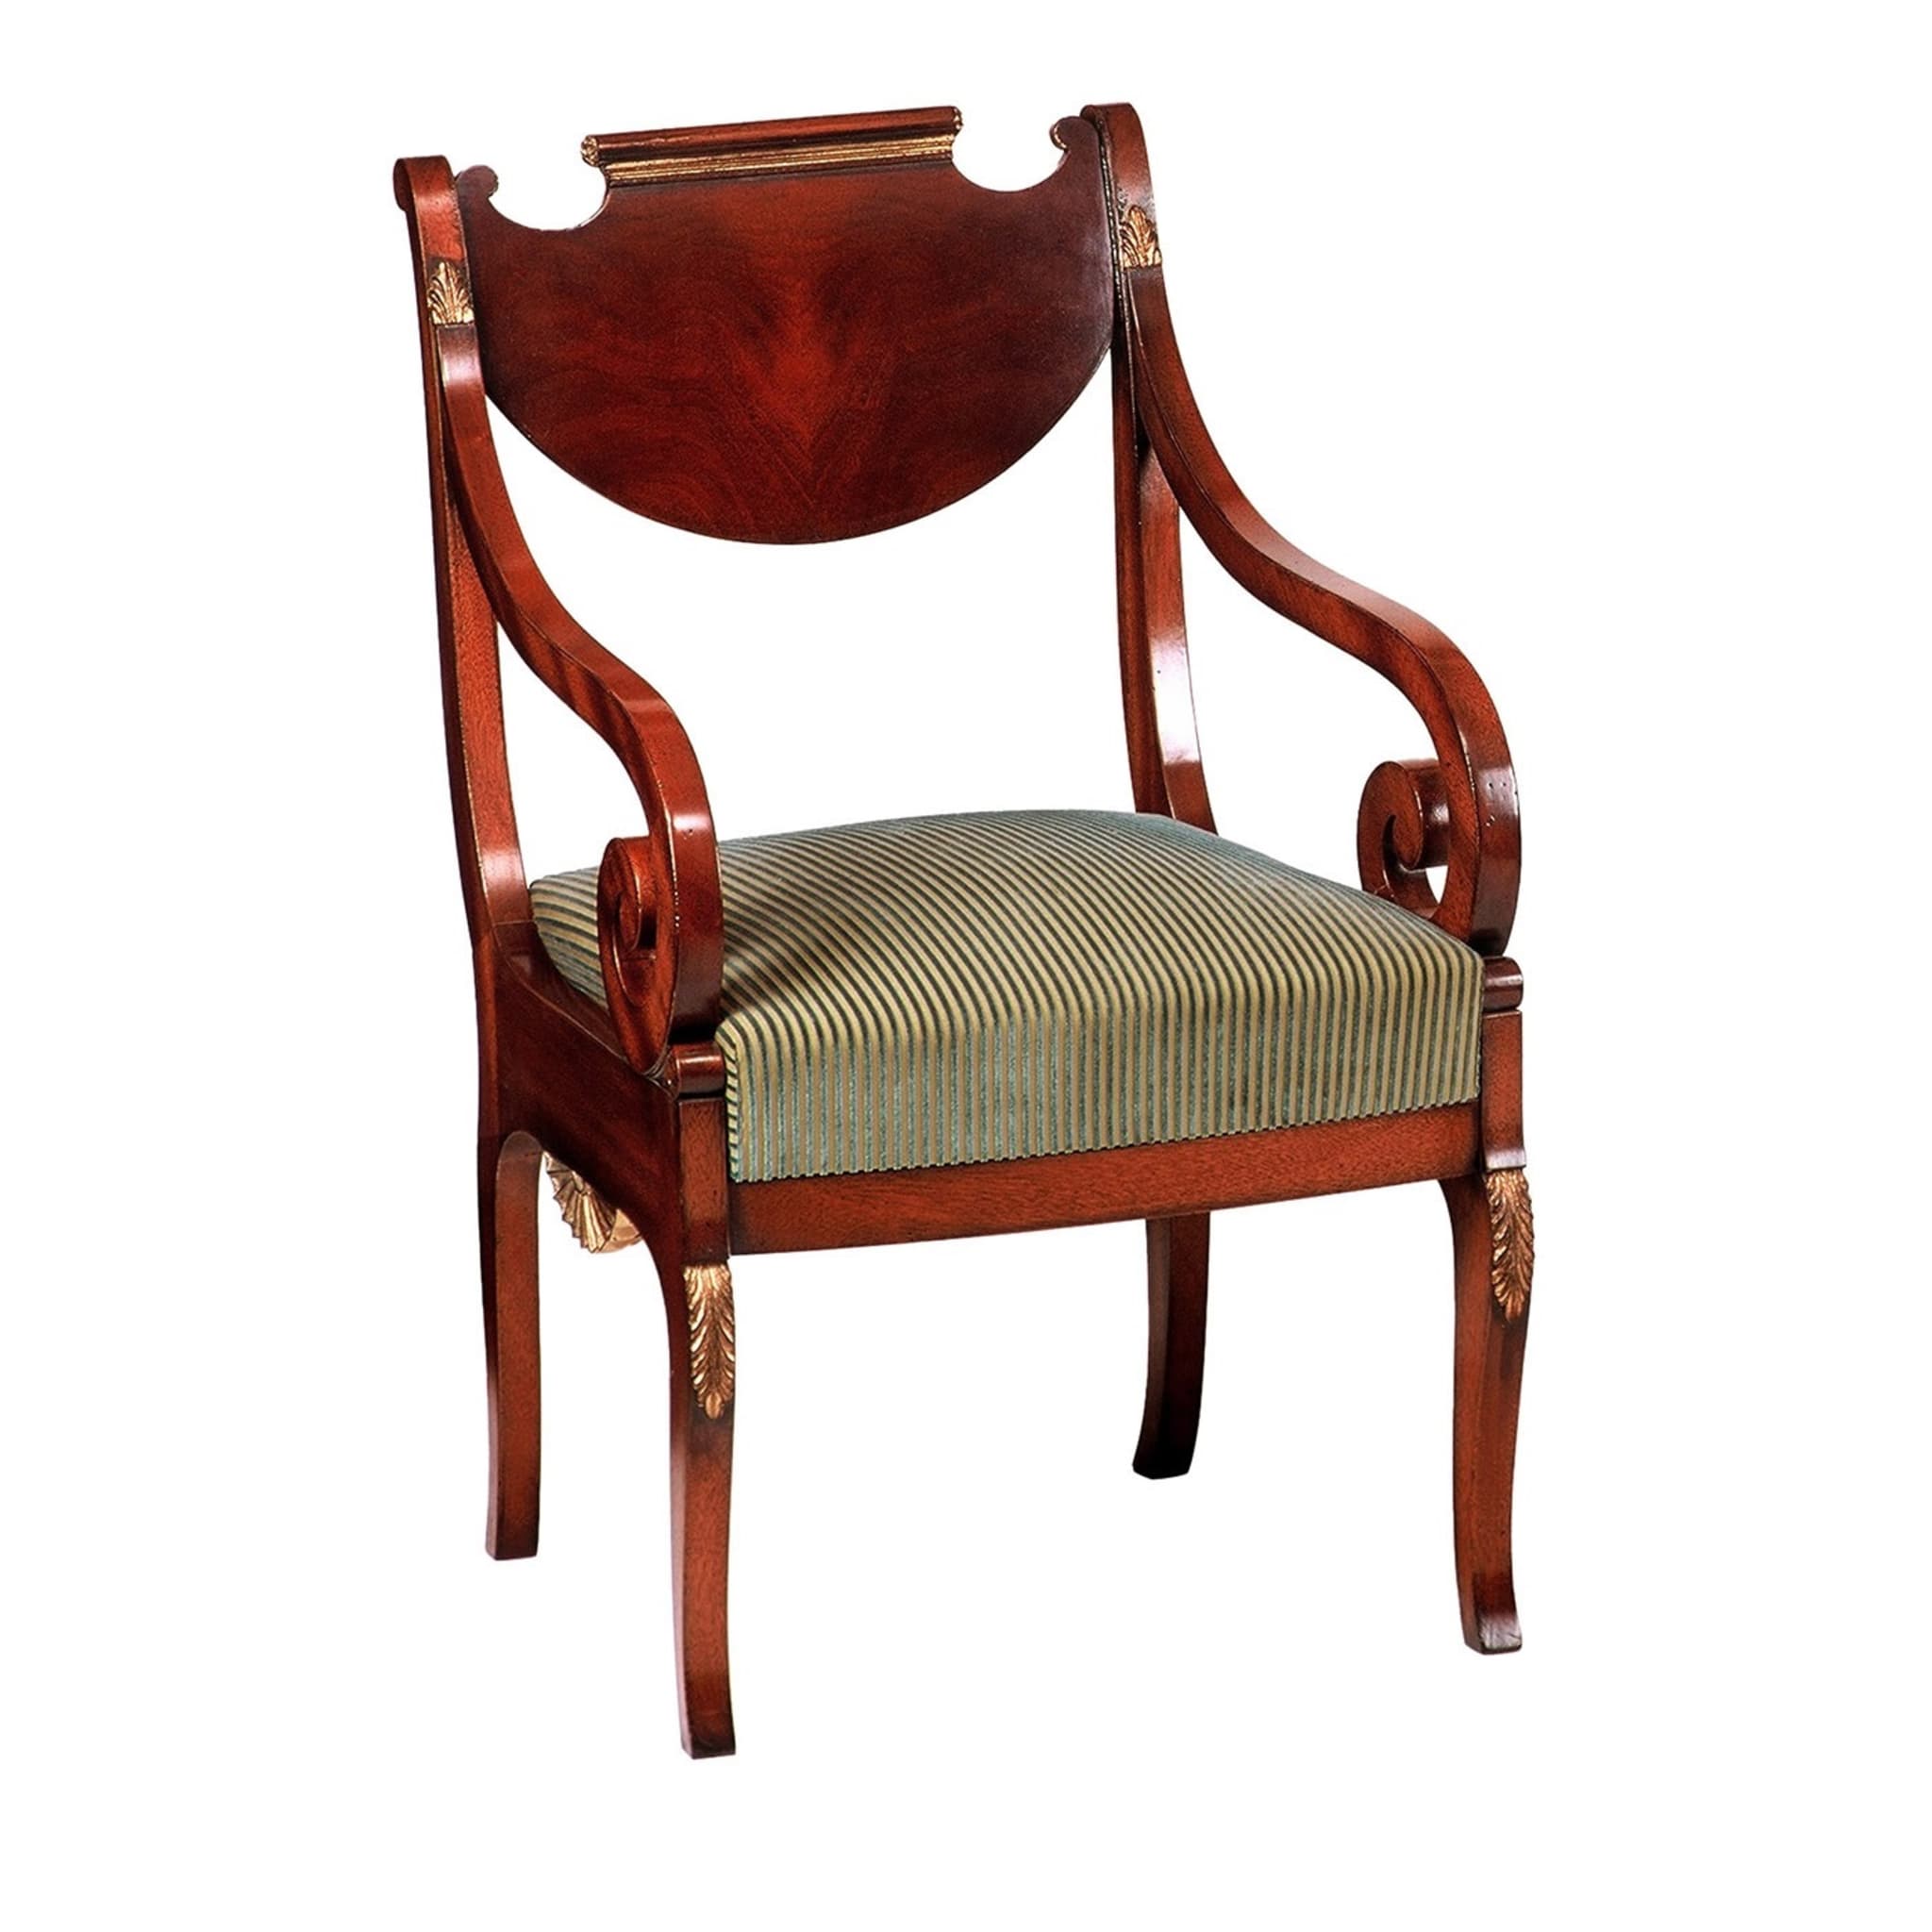 Russischer Empire-Stil Mahagoni-Stuhl mit Armlehnen - Hauptansicht